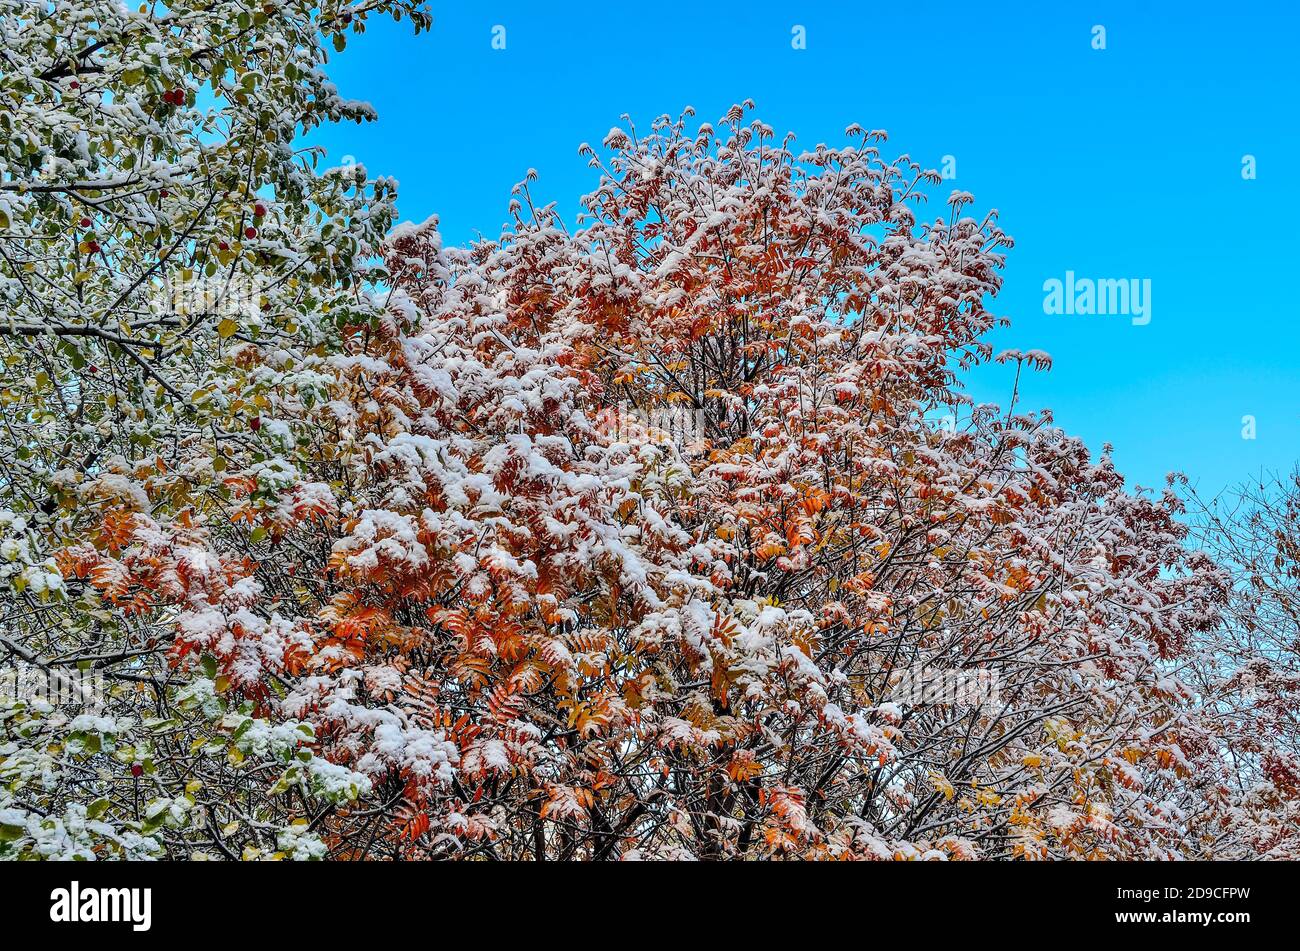 Première neige sur le feuillage d'automne coloré des arbres après la chute de neige sur fond bleu ciel. Dernier jour de l'automne - début de l'hiver. Beauté de la nature ou de la détese Banque D'Images